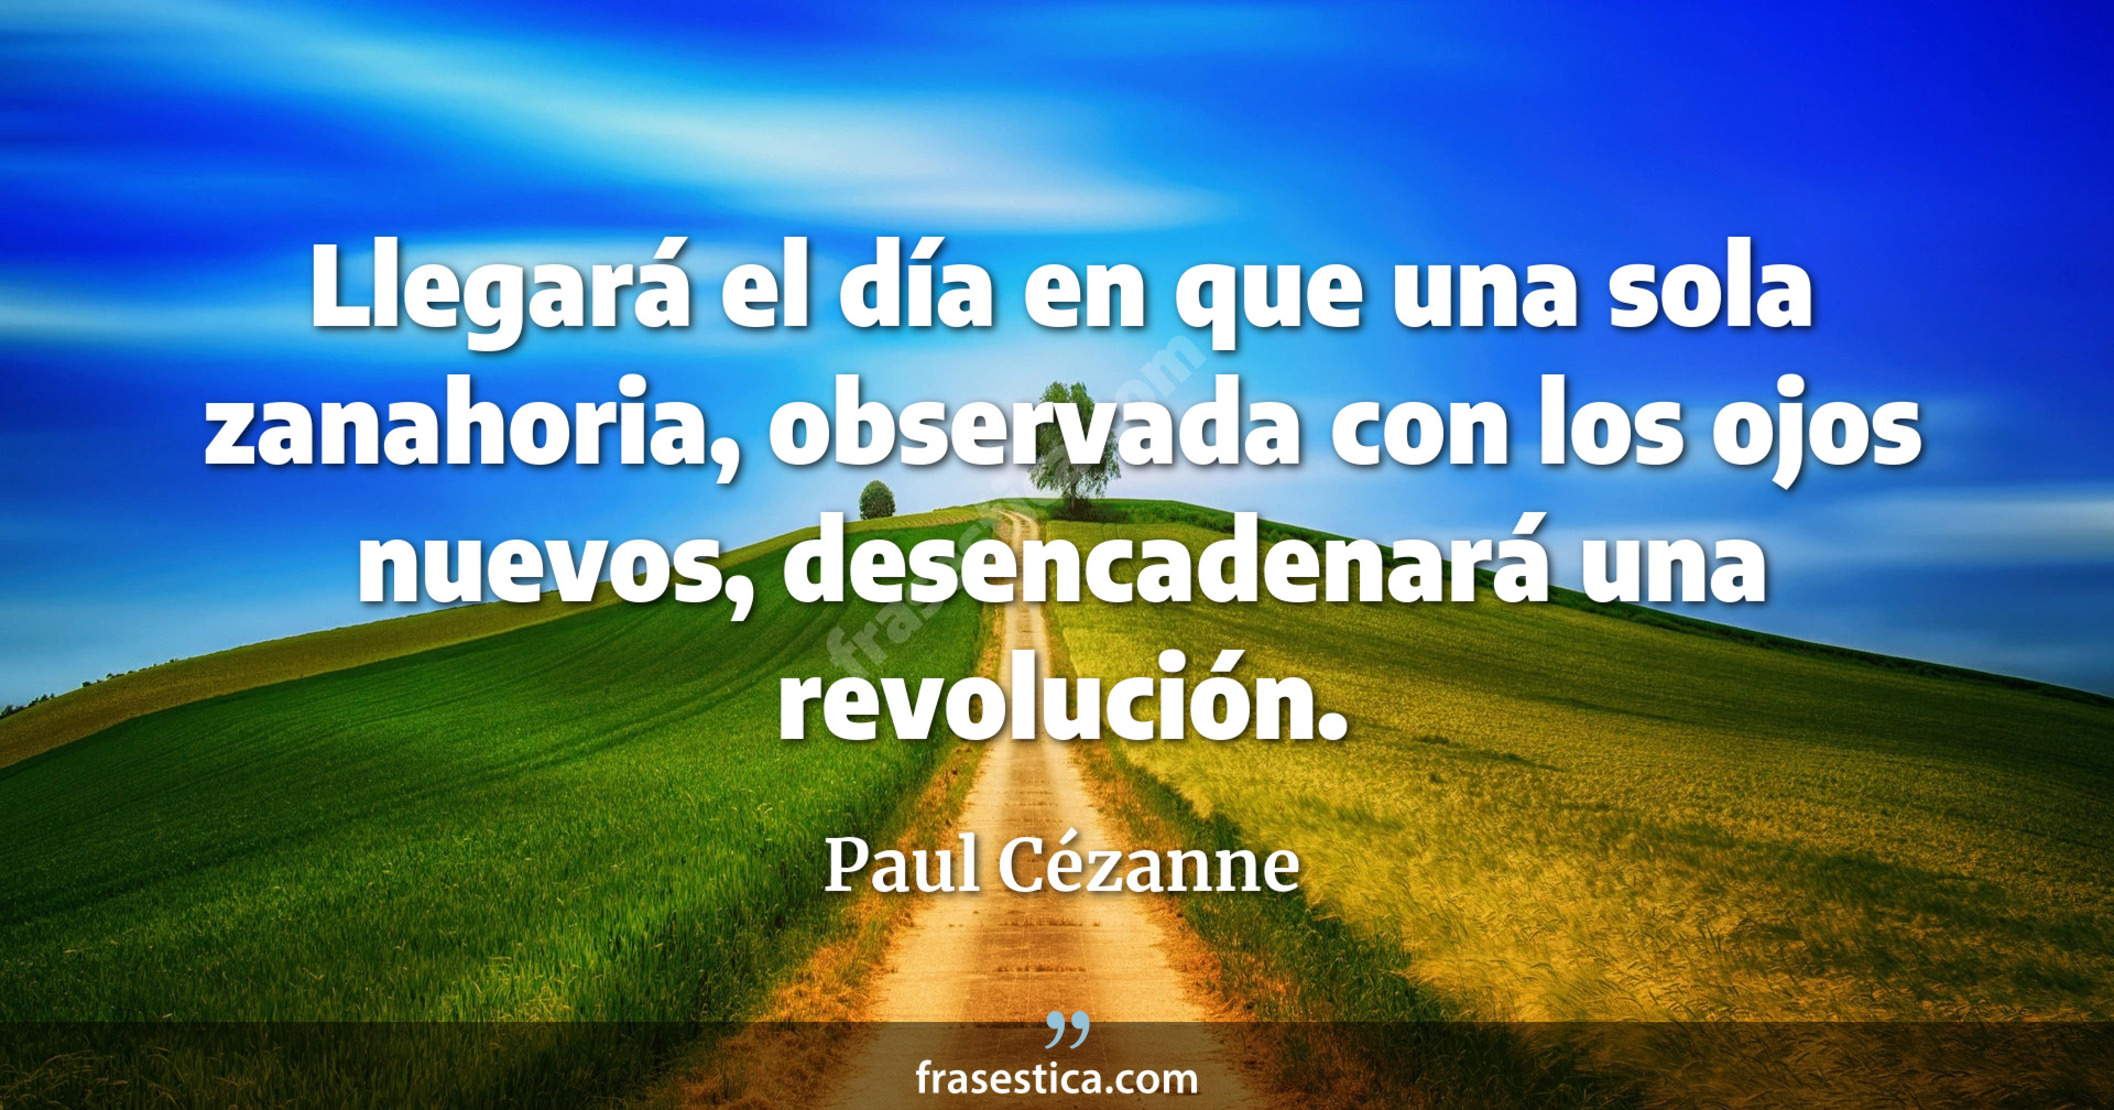 Llegará el día en que una sola zanahoria, observada con los ojos nuevos, desencadenará una revolución. - Paul Cézanne